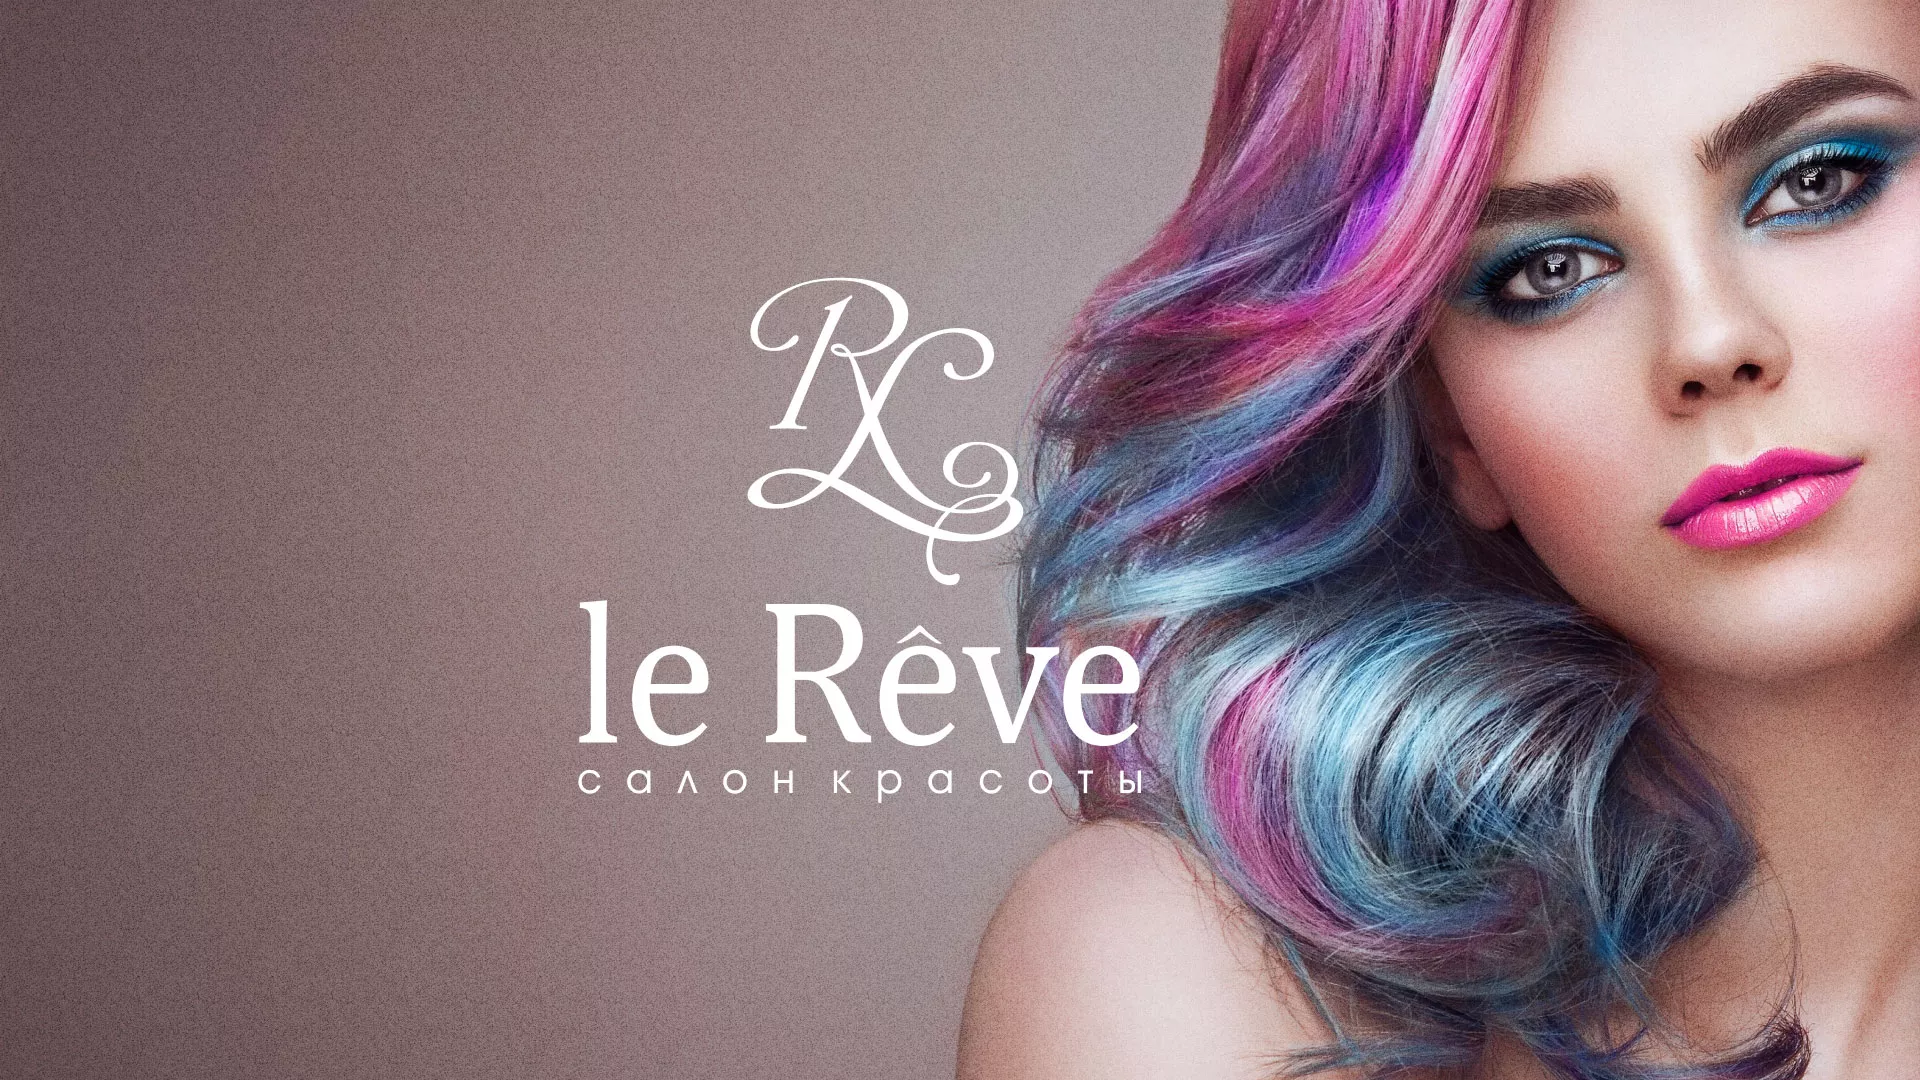 Создание сайта для салона красоты «Le Reve» в Асино